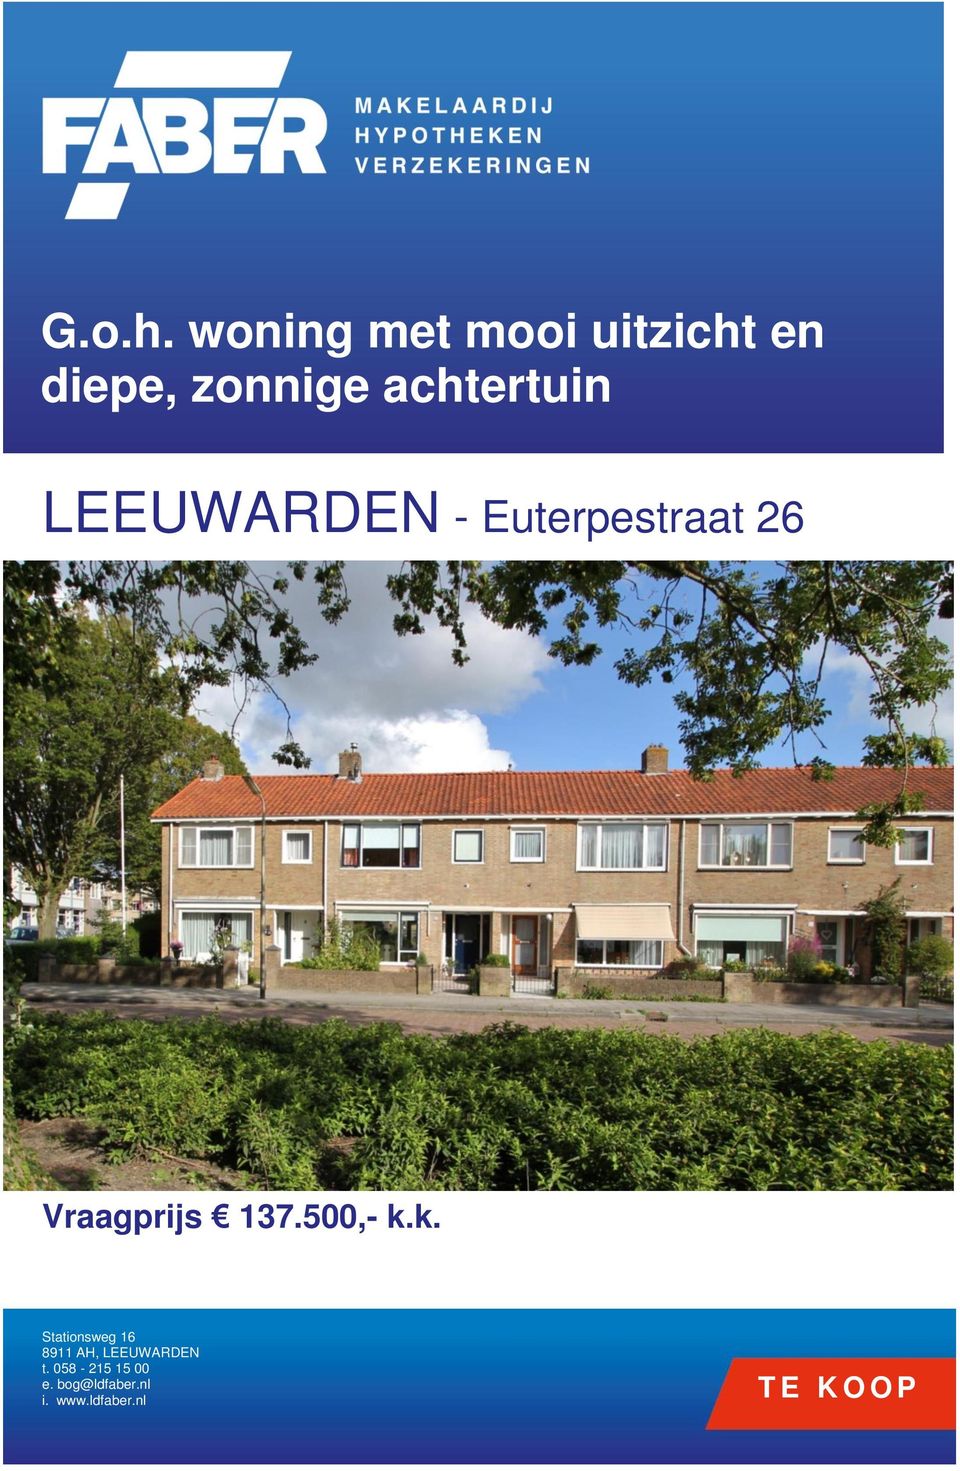 LEEUWARDEN - Euterpestraat 26 Vraagprijs 137.500,- k.